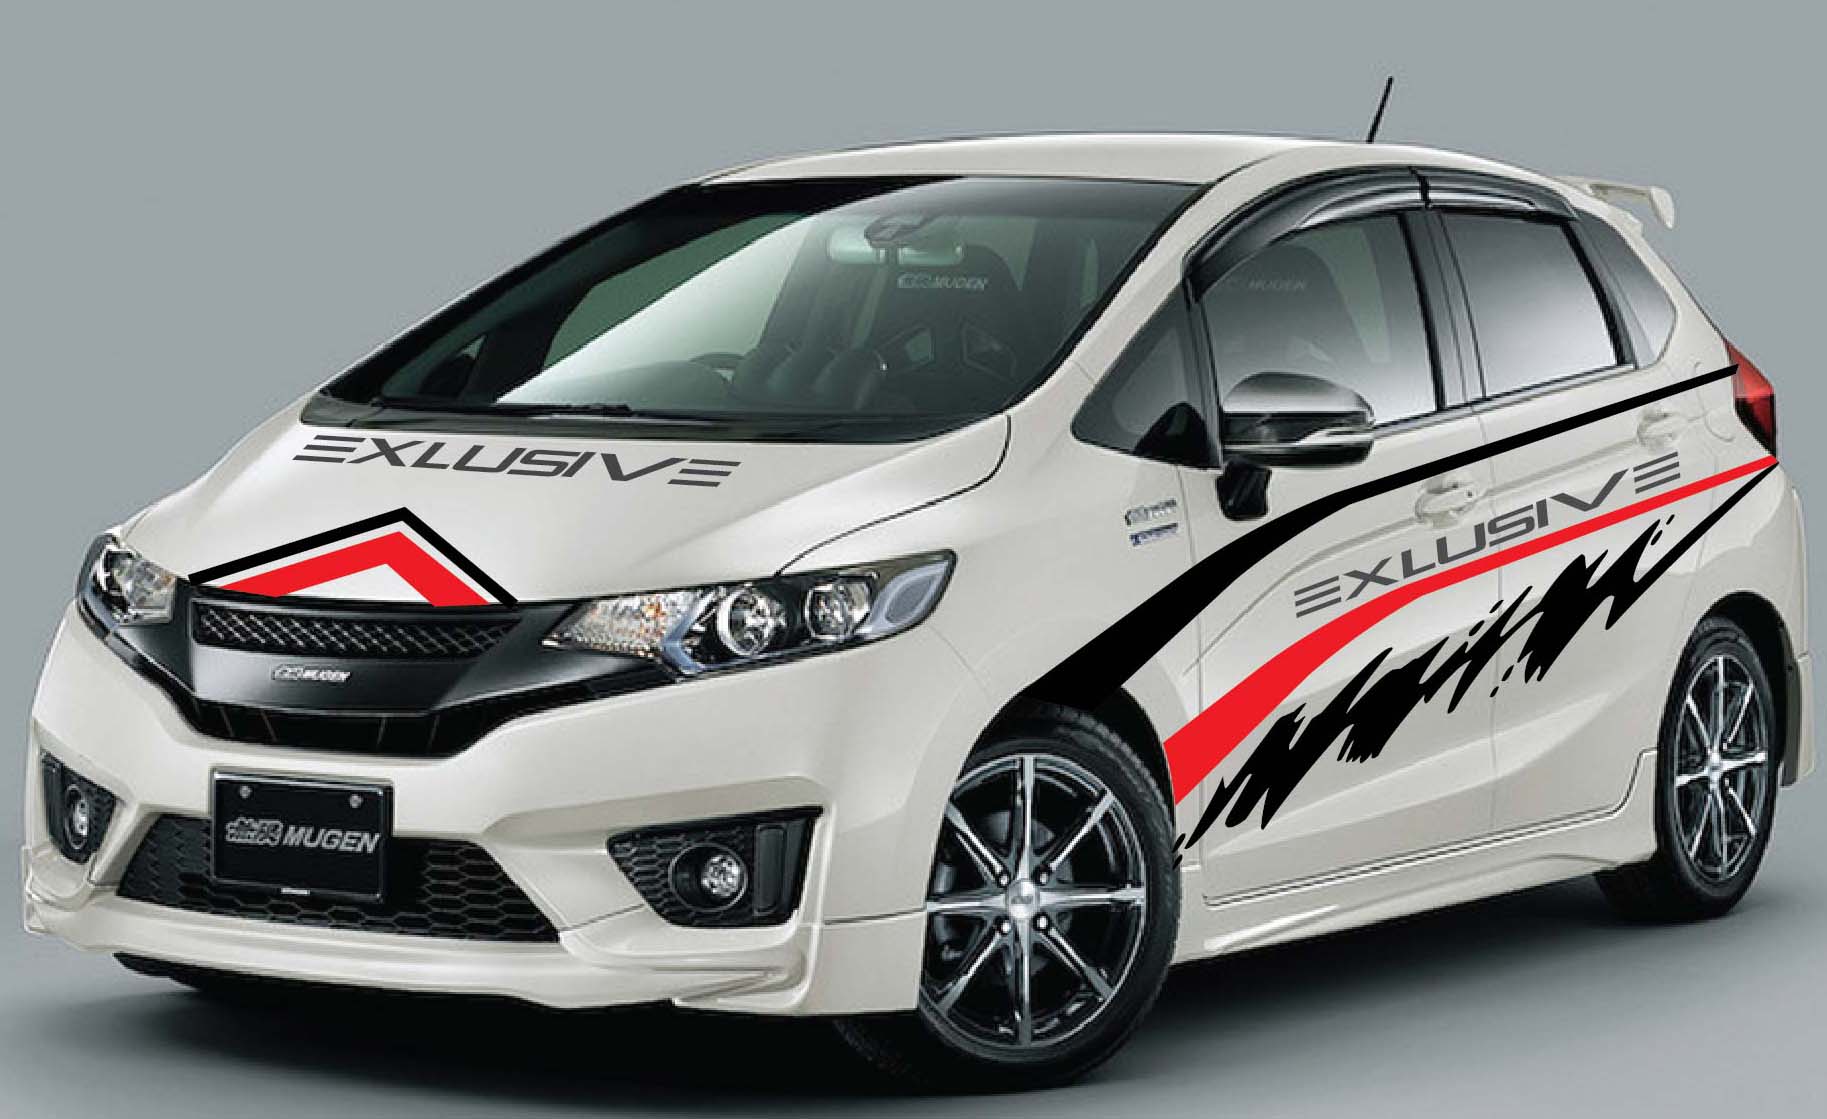 Kumpulan Modifikasi Honda All New Jazz Rs Putih 2015 Rekanotomotif